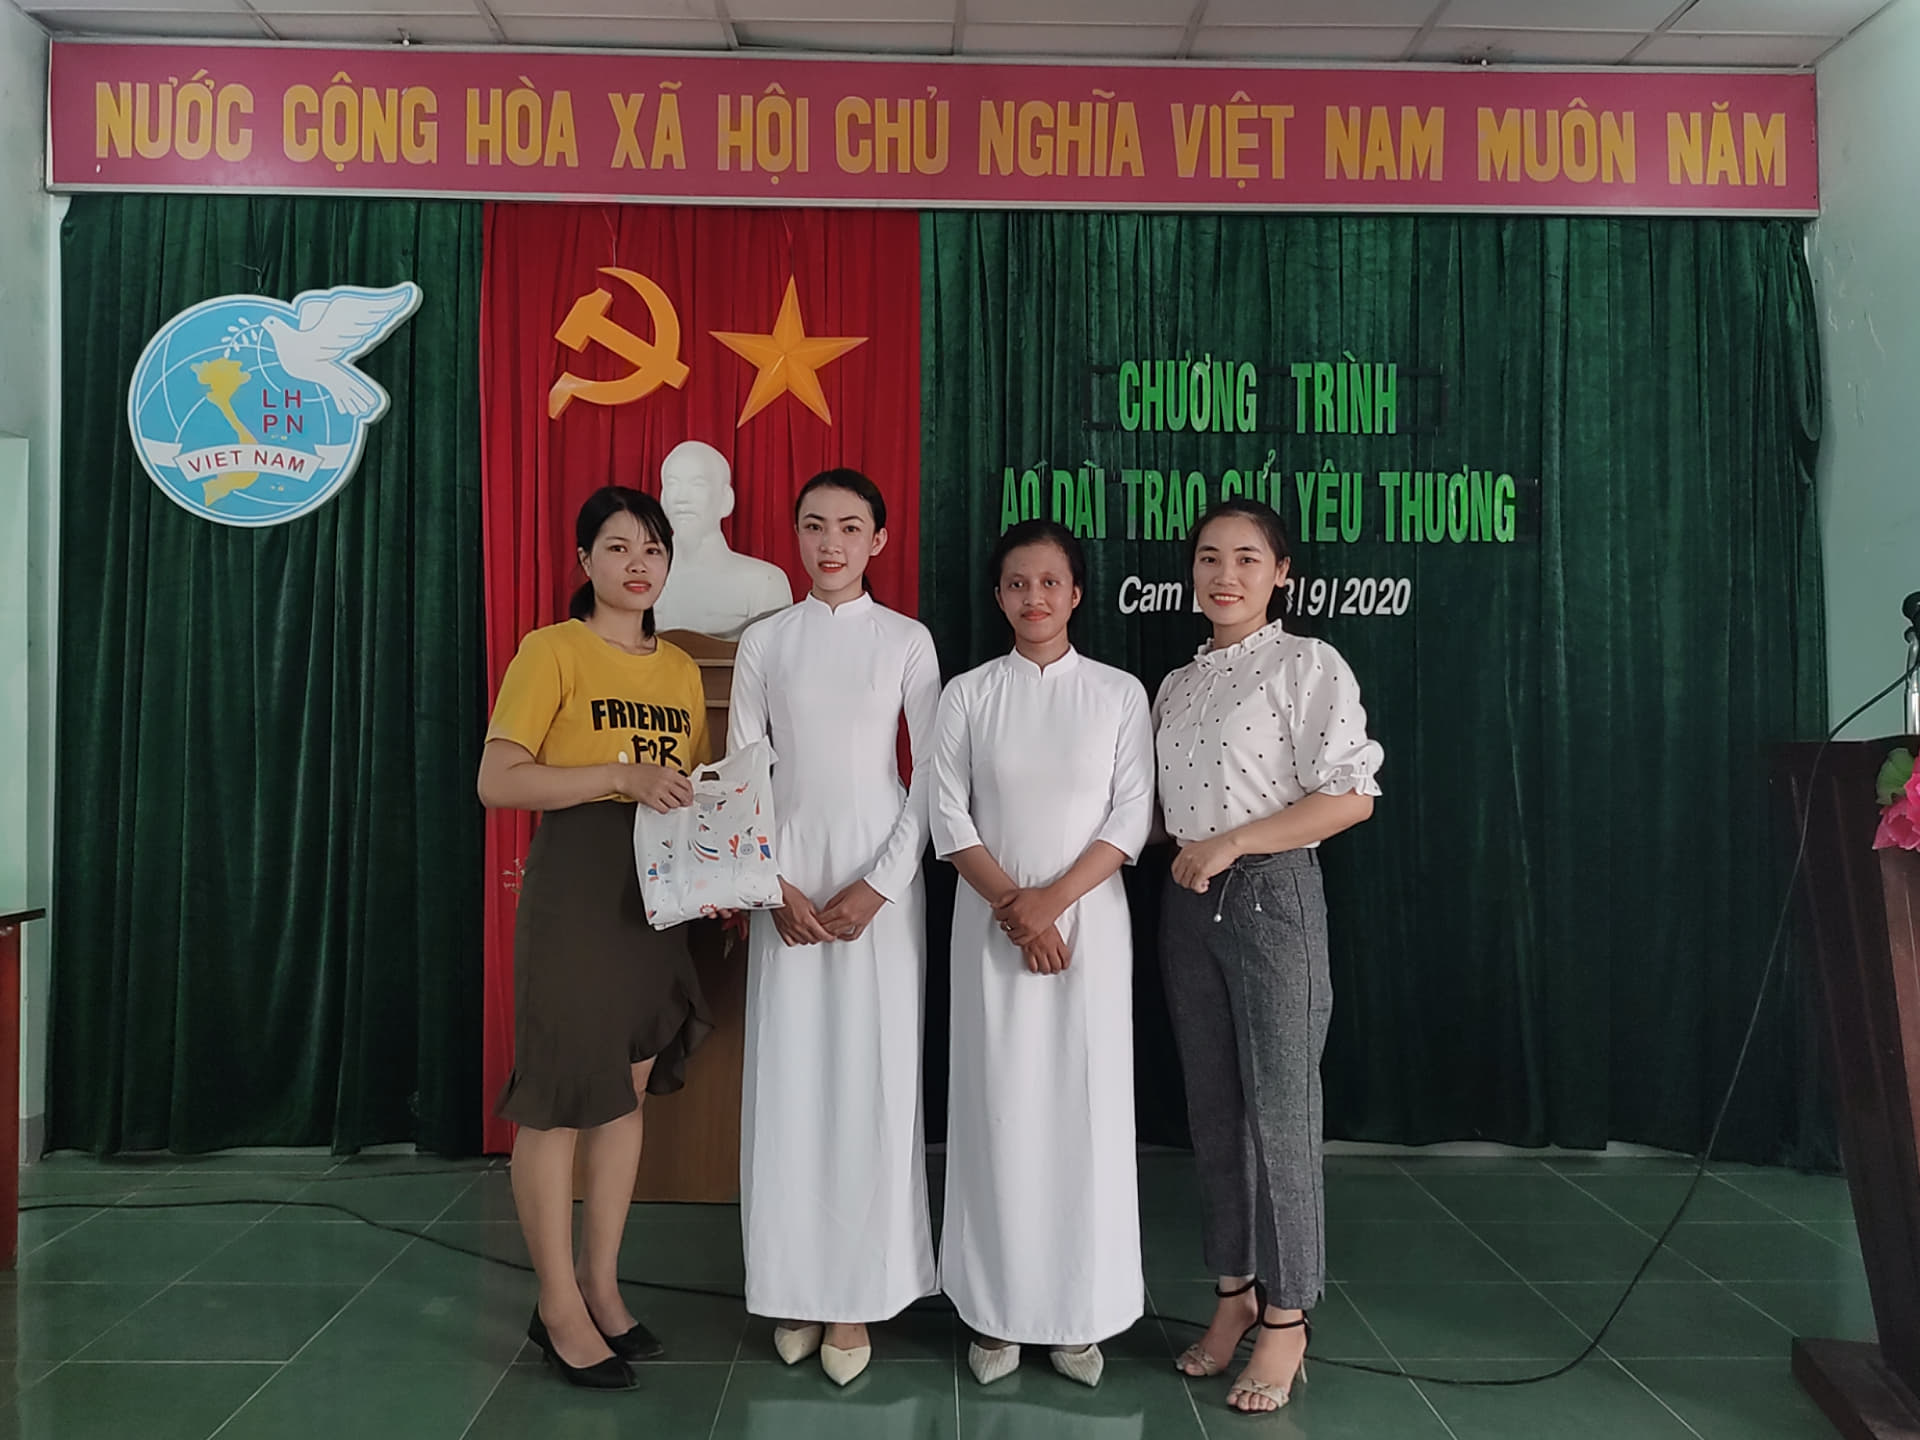 Chị Hằng Liên chủ tịch phụ nữ xã Cam Lập mặc quần tây áo trắng tặng áo dài trắng cho hai em học sinh nữ ở xã.jpg (257 KB)